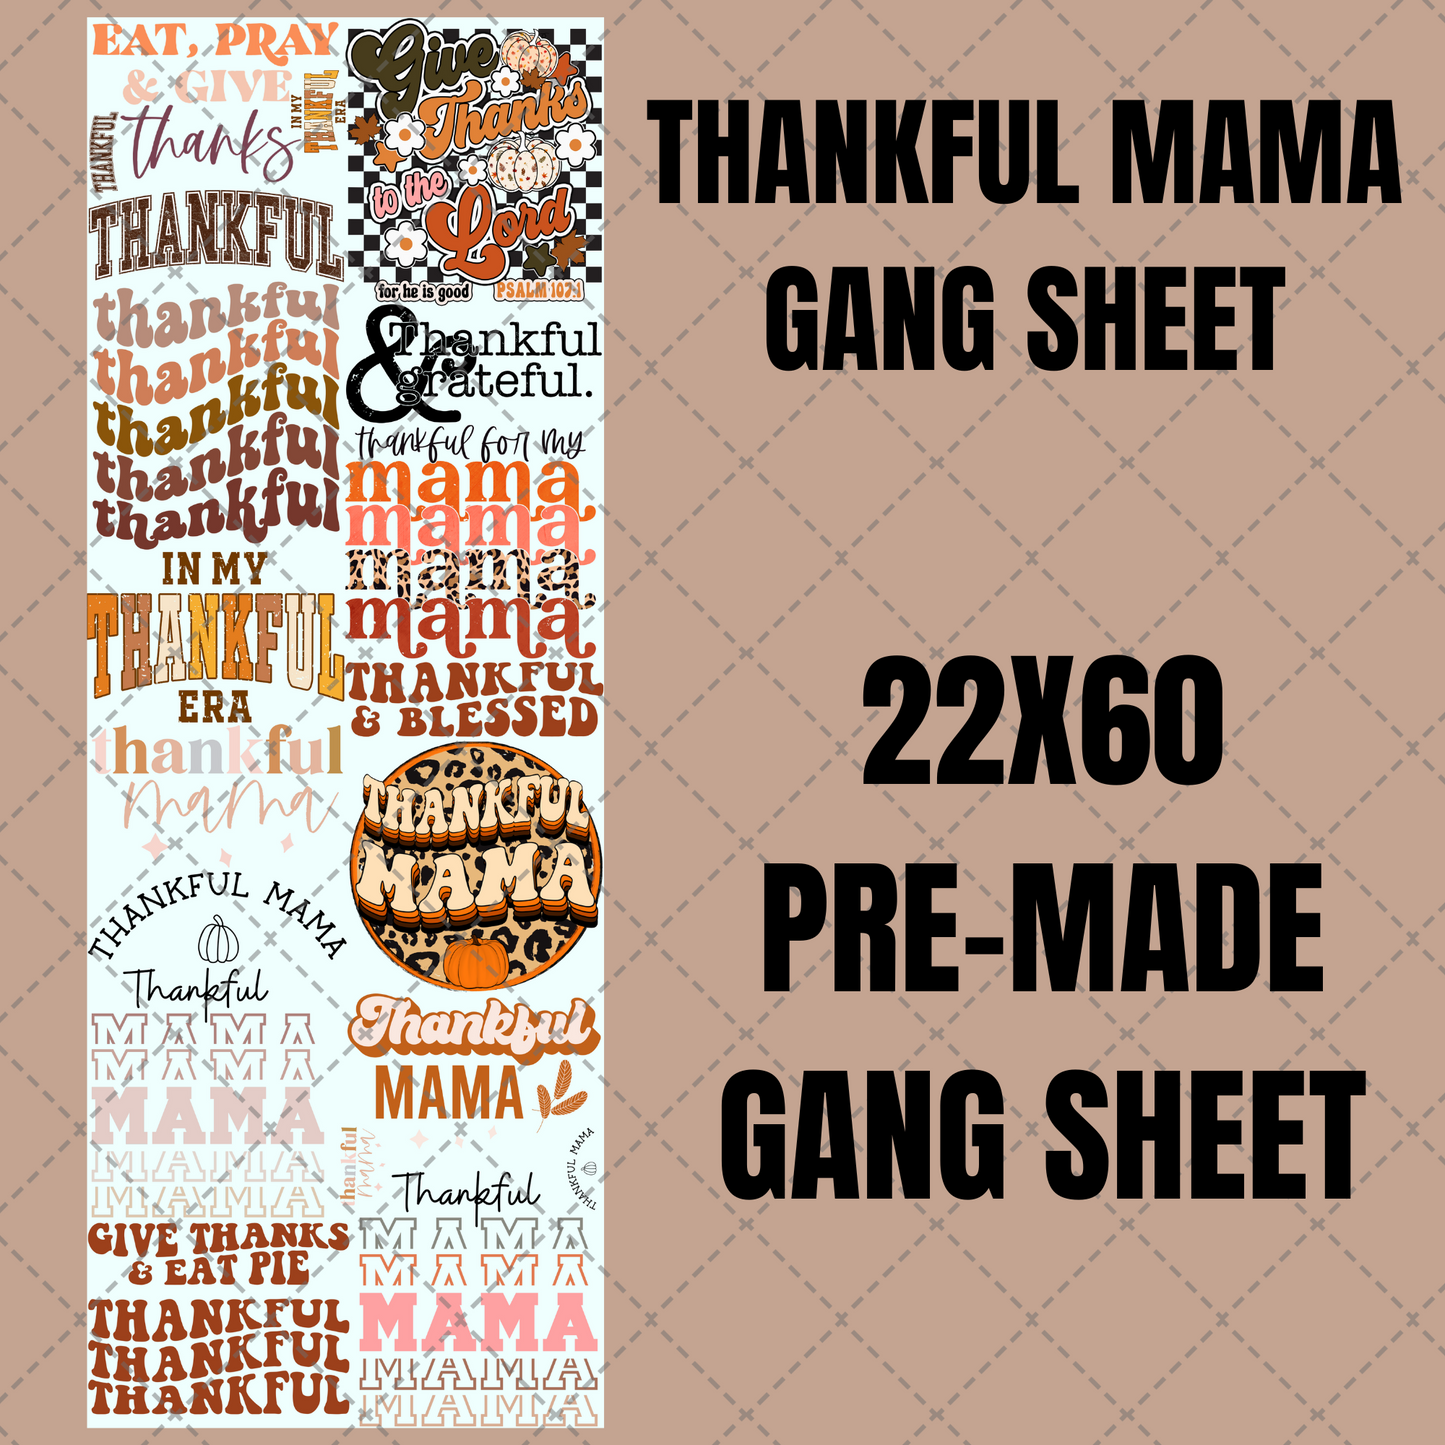 Thankful Mama Premade Gang Sheet 22"x60"